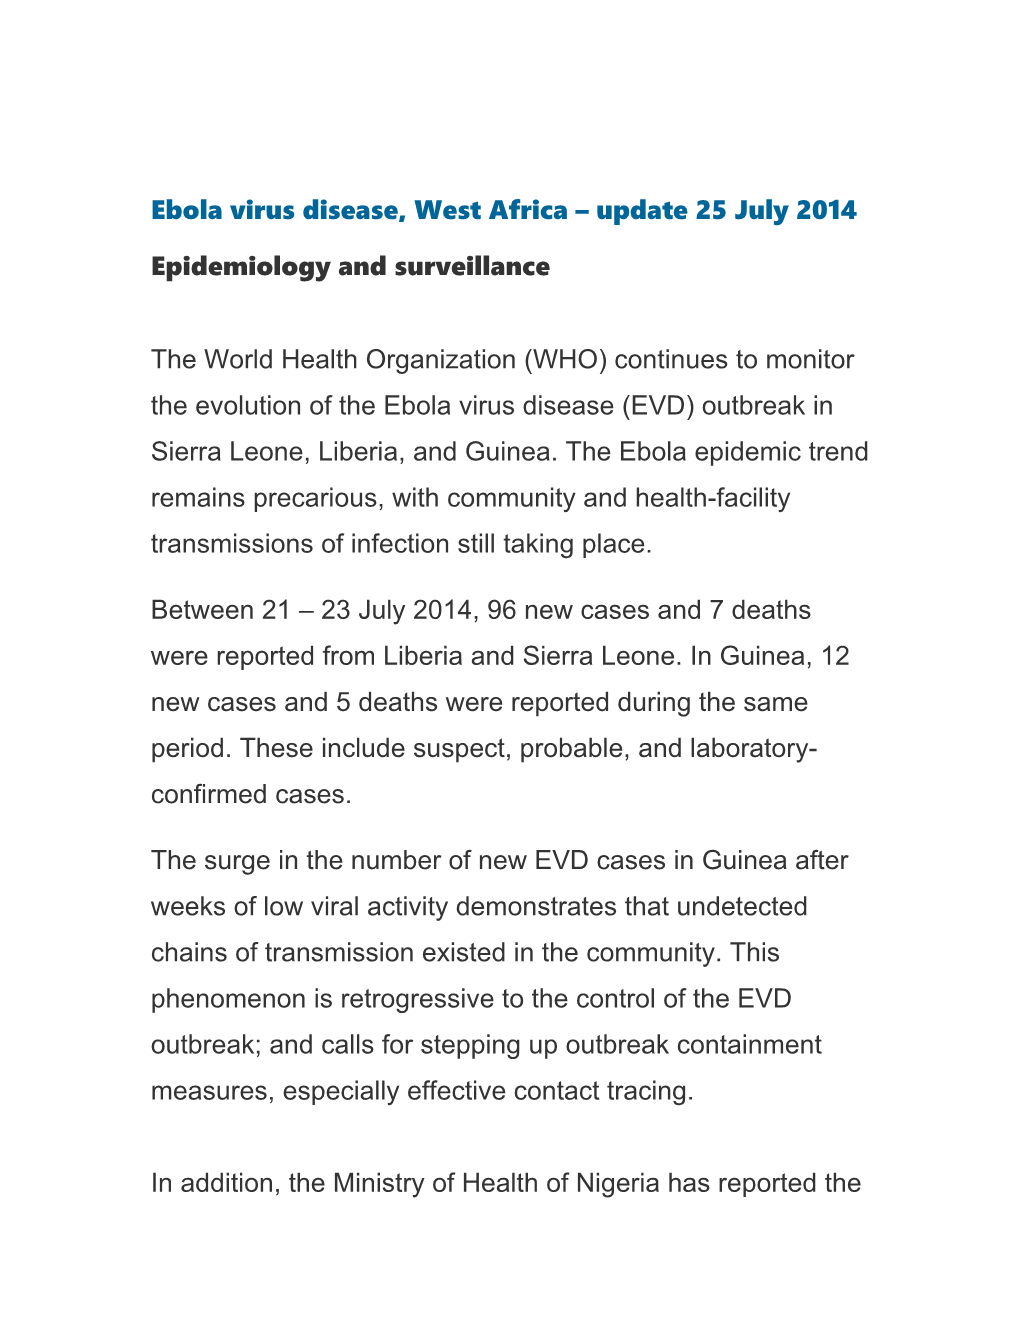 Ebola Virus Disease, West Africa Update 25 July 2014